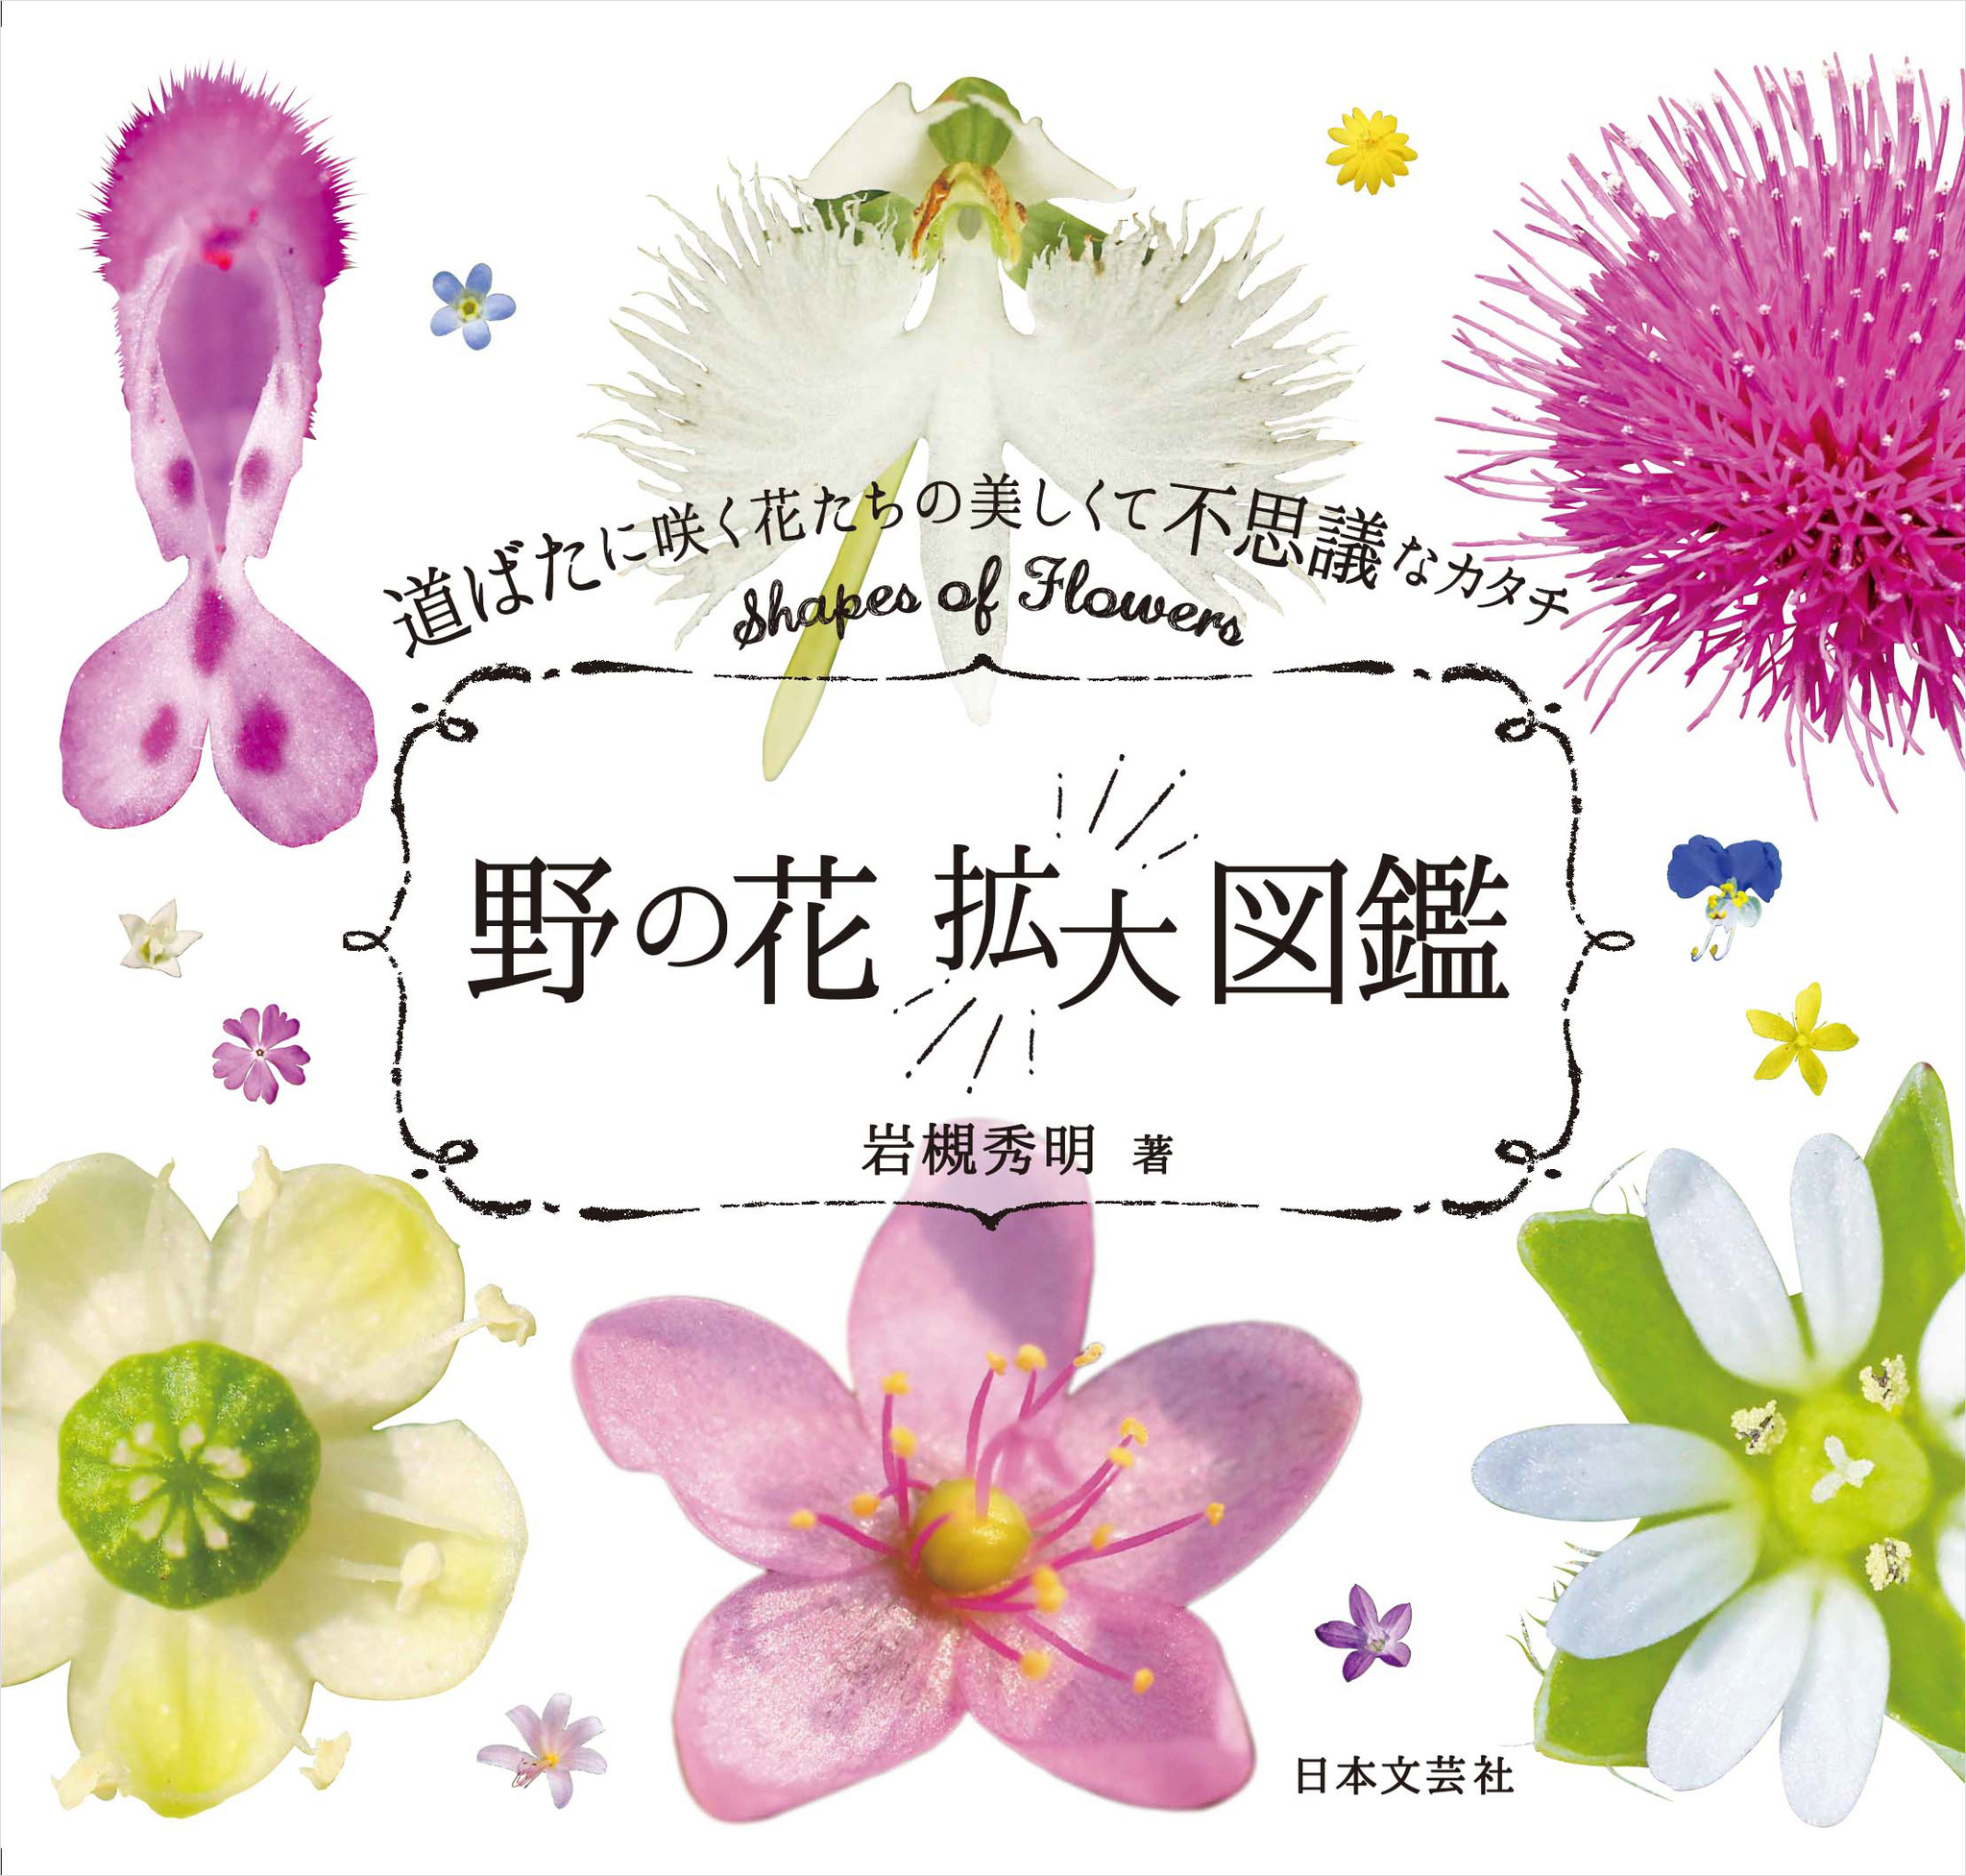 身近に咲く花の中をじっとのぞきこんでみよう 野の花 拡大図鑑 発売 株式会社日本文芸社のプレスリリース